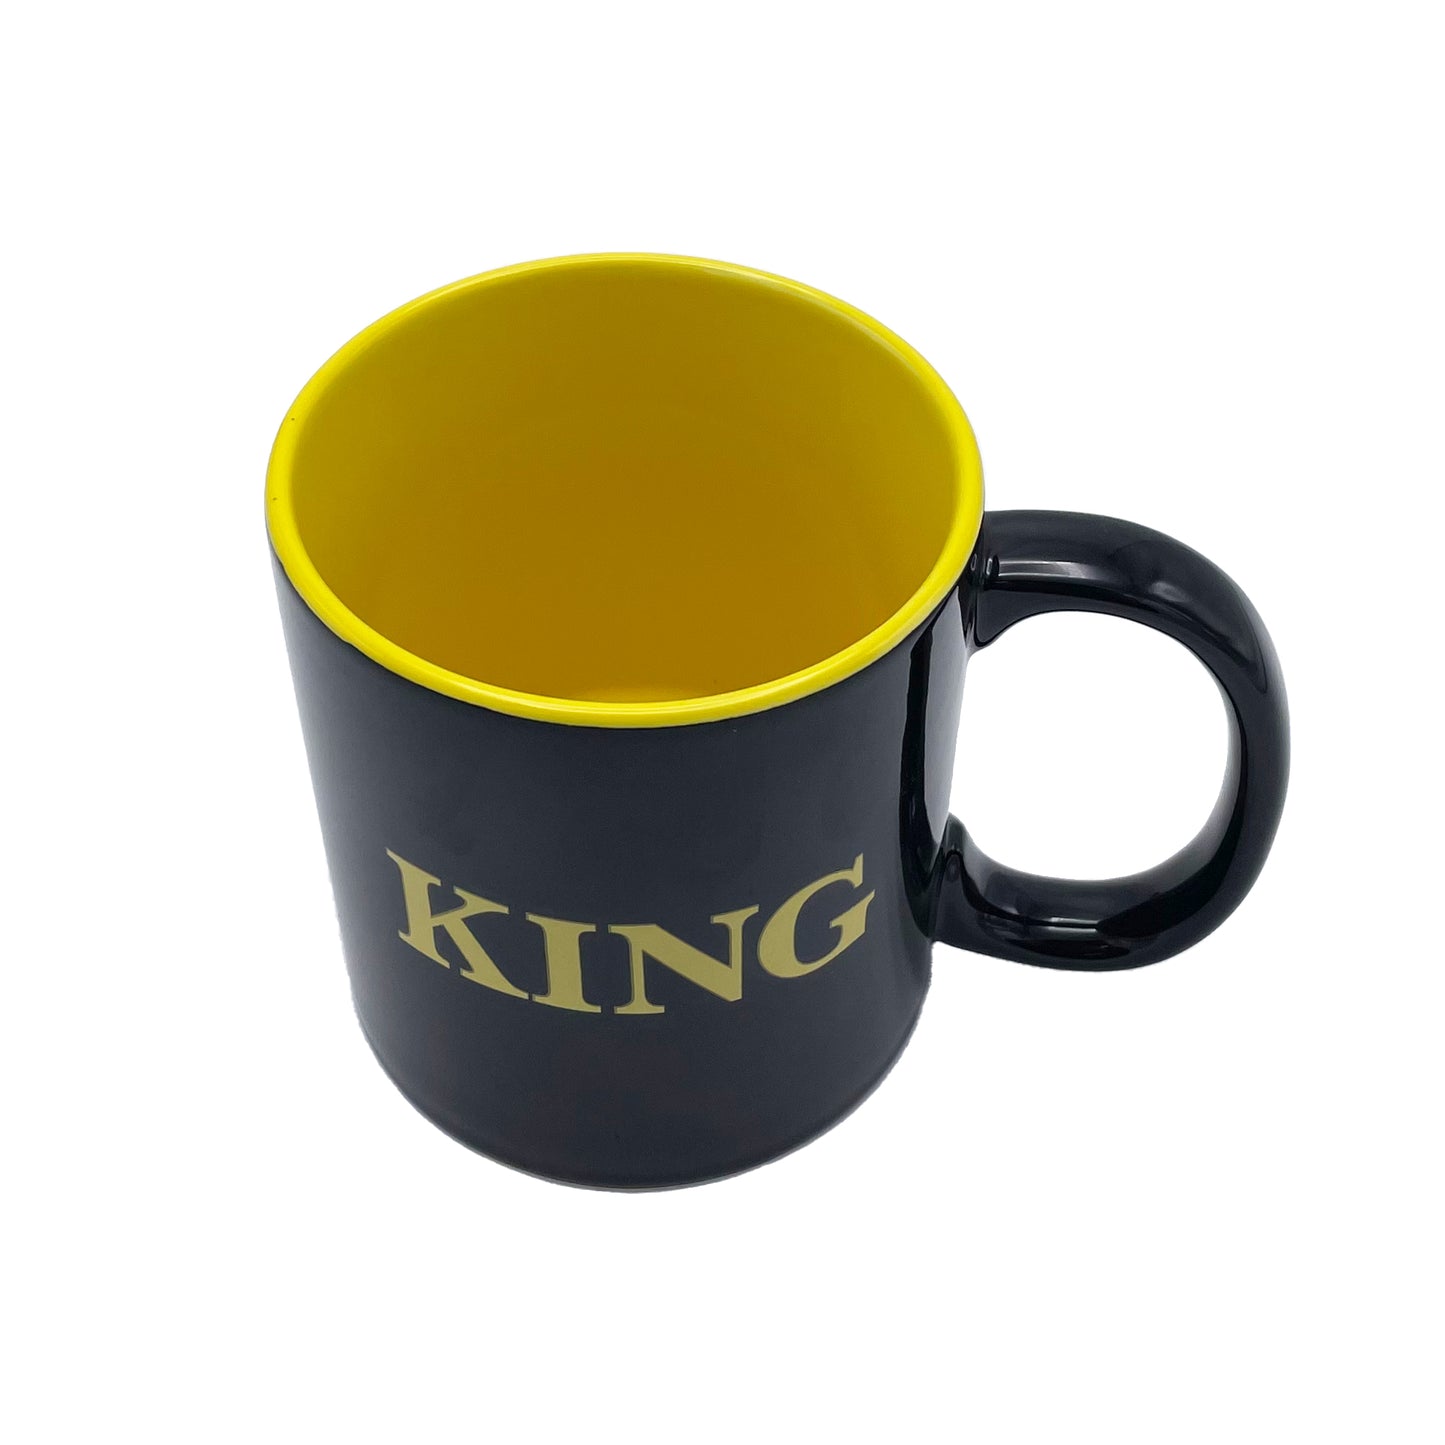 Giant King Mug